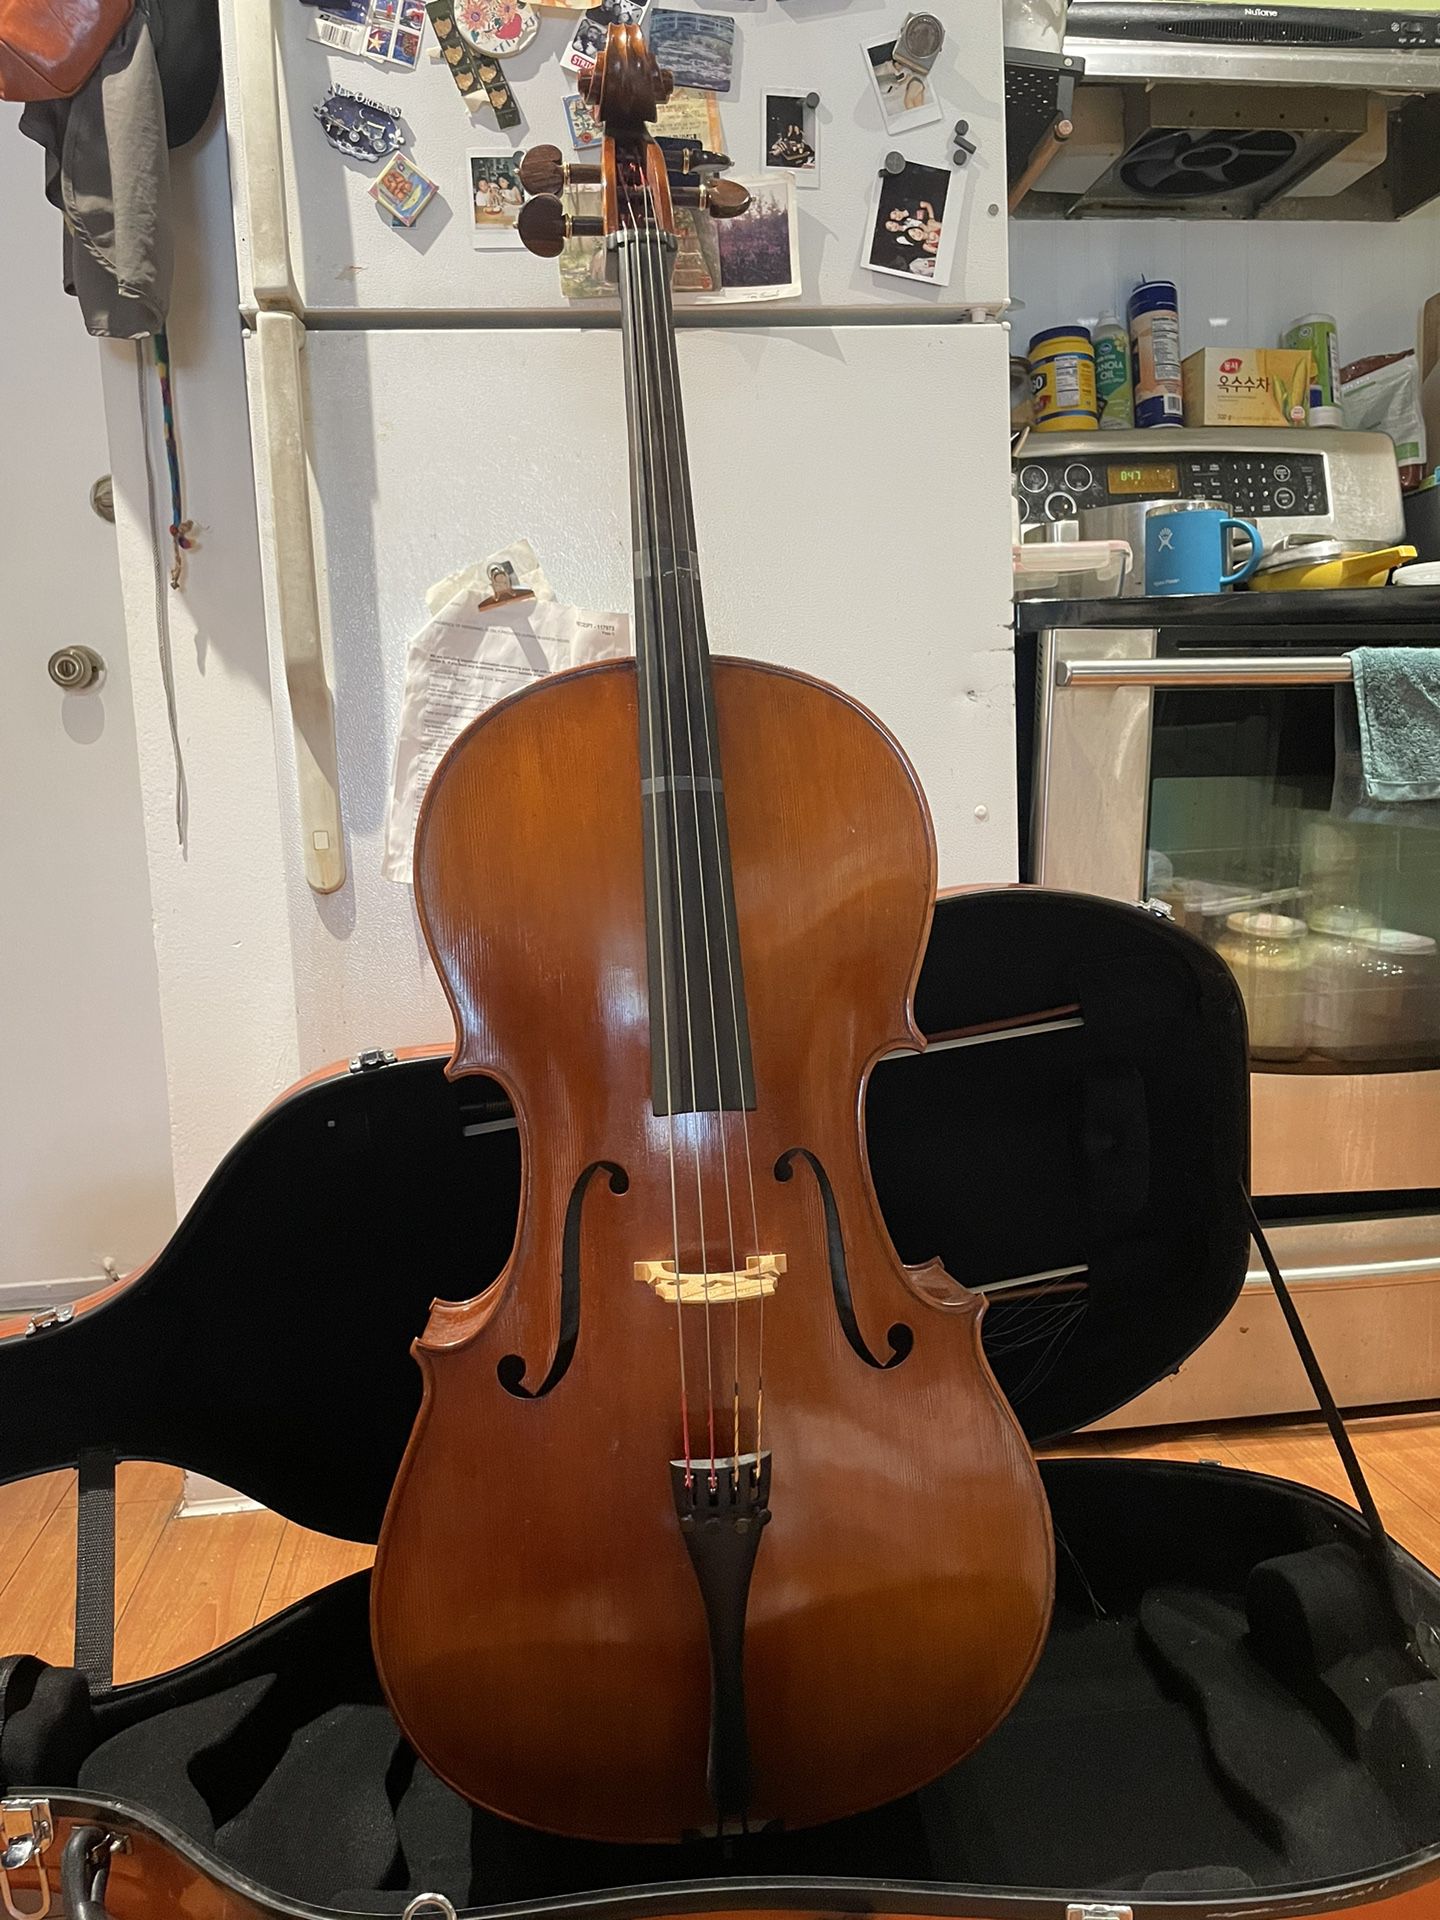 Used Cello!